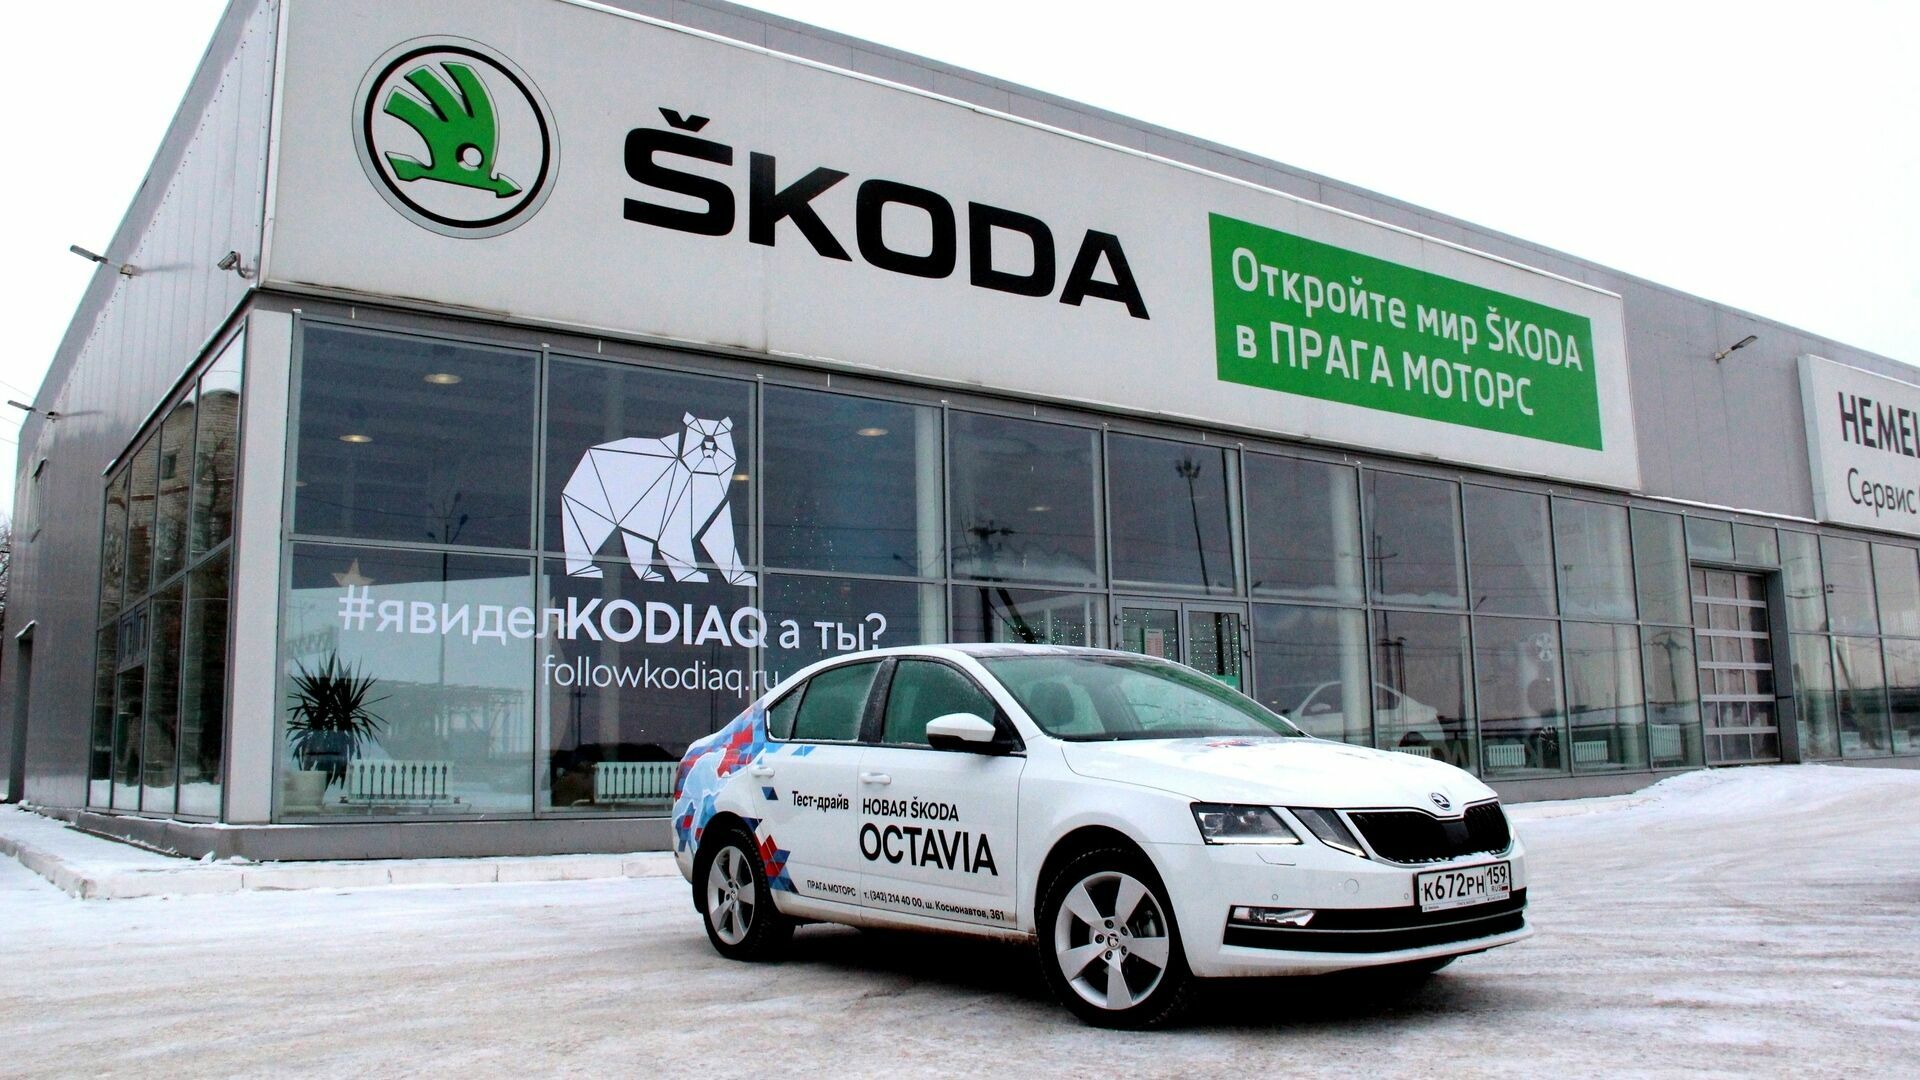 «Прага Моторс»: При покупке SKODA клиент голосует не кошельком, а приходит за ценностями марки